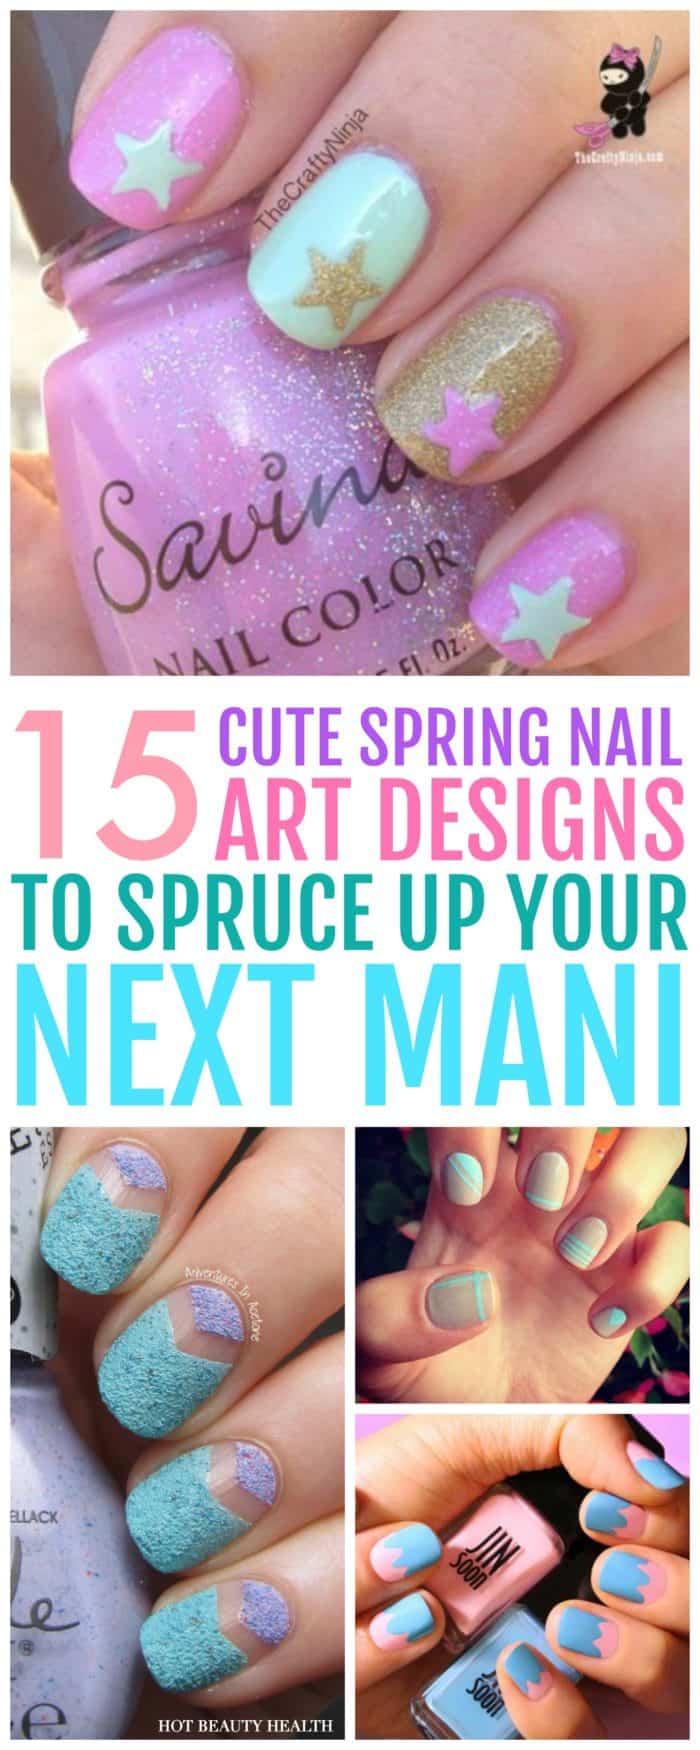 15 Cute Spring Nails and Nail Art Ideas!